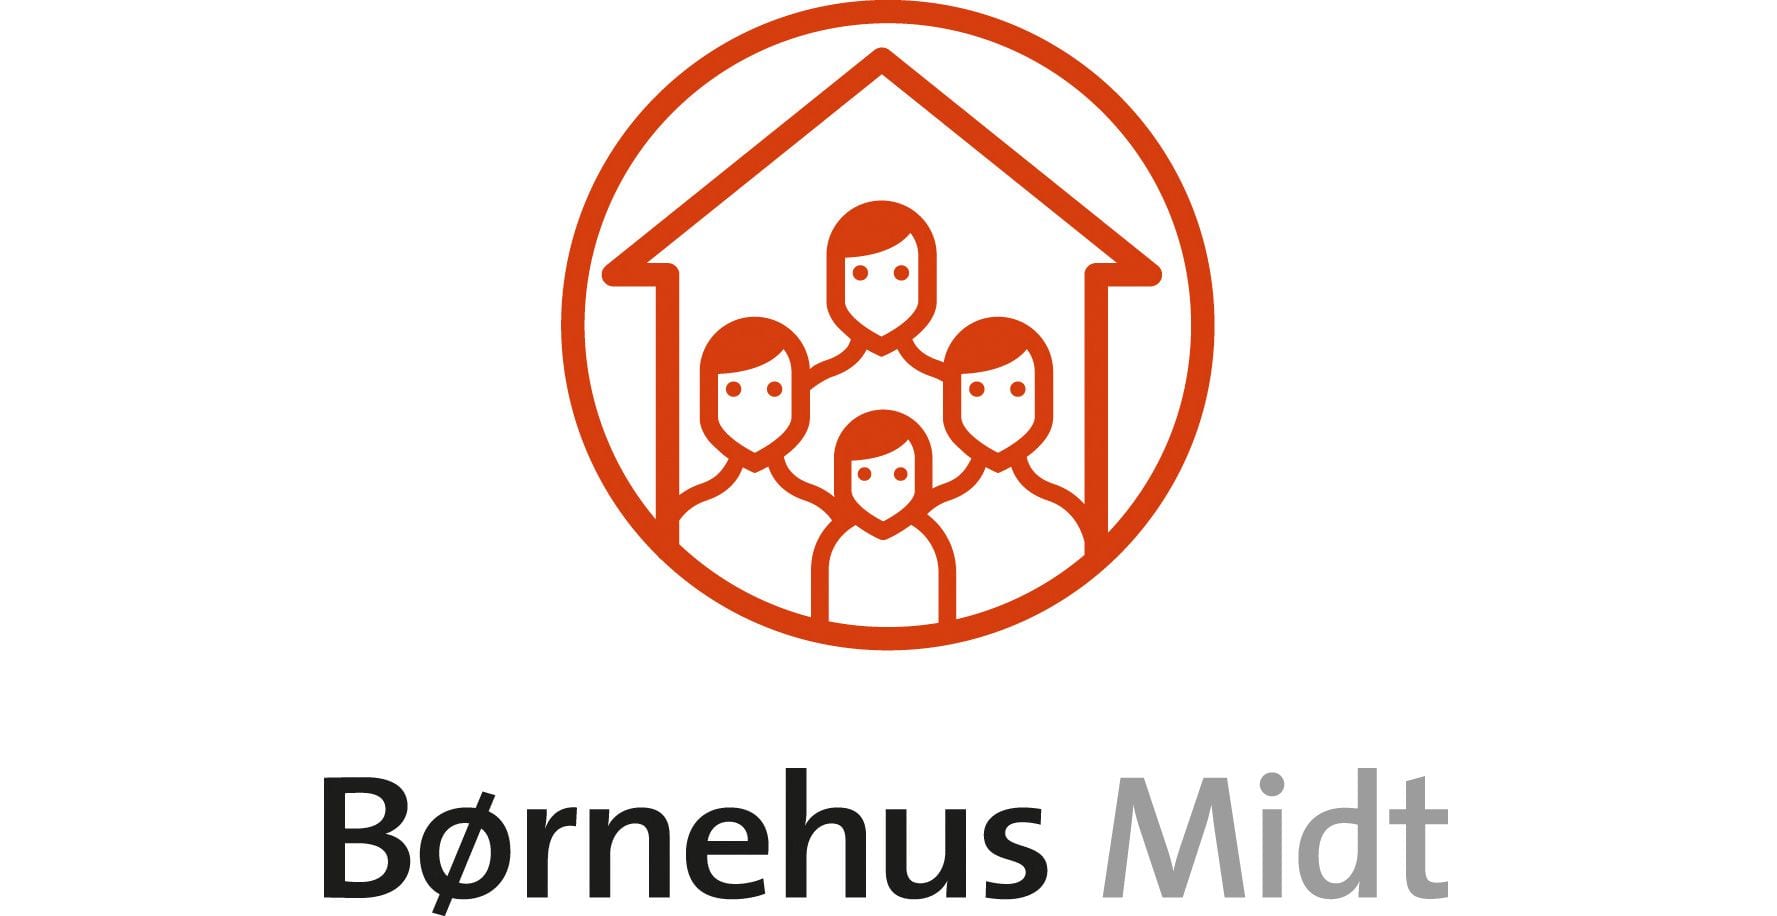 Børnehus Midt logo